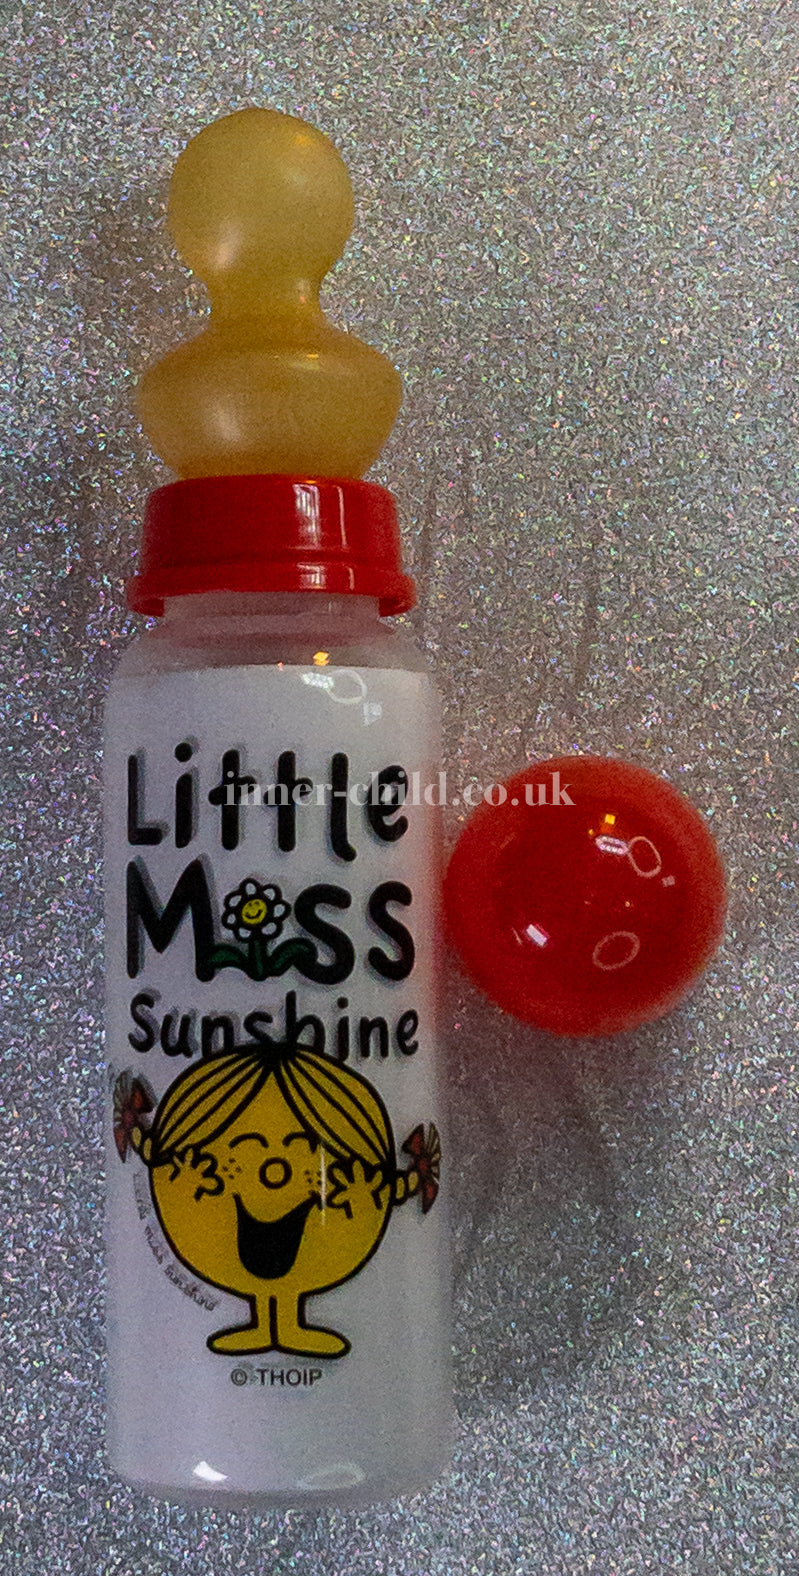 Little Miss Sunshine bottle